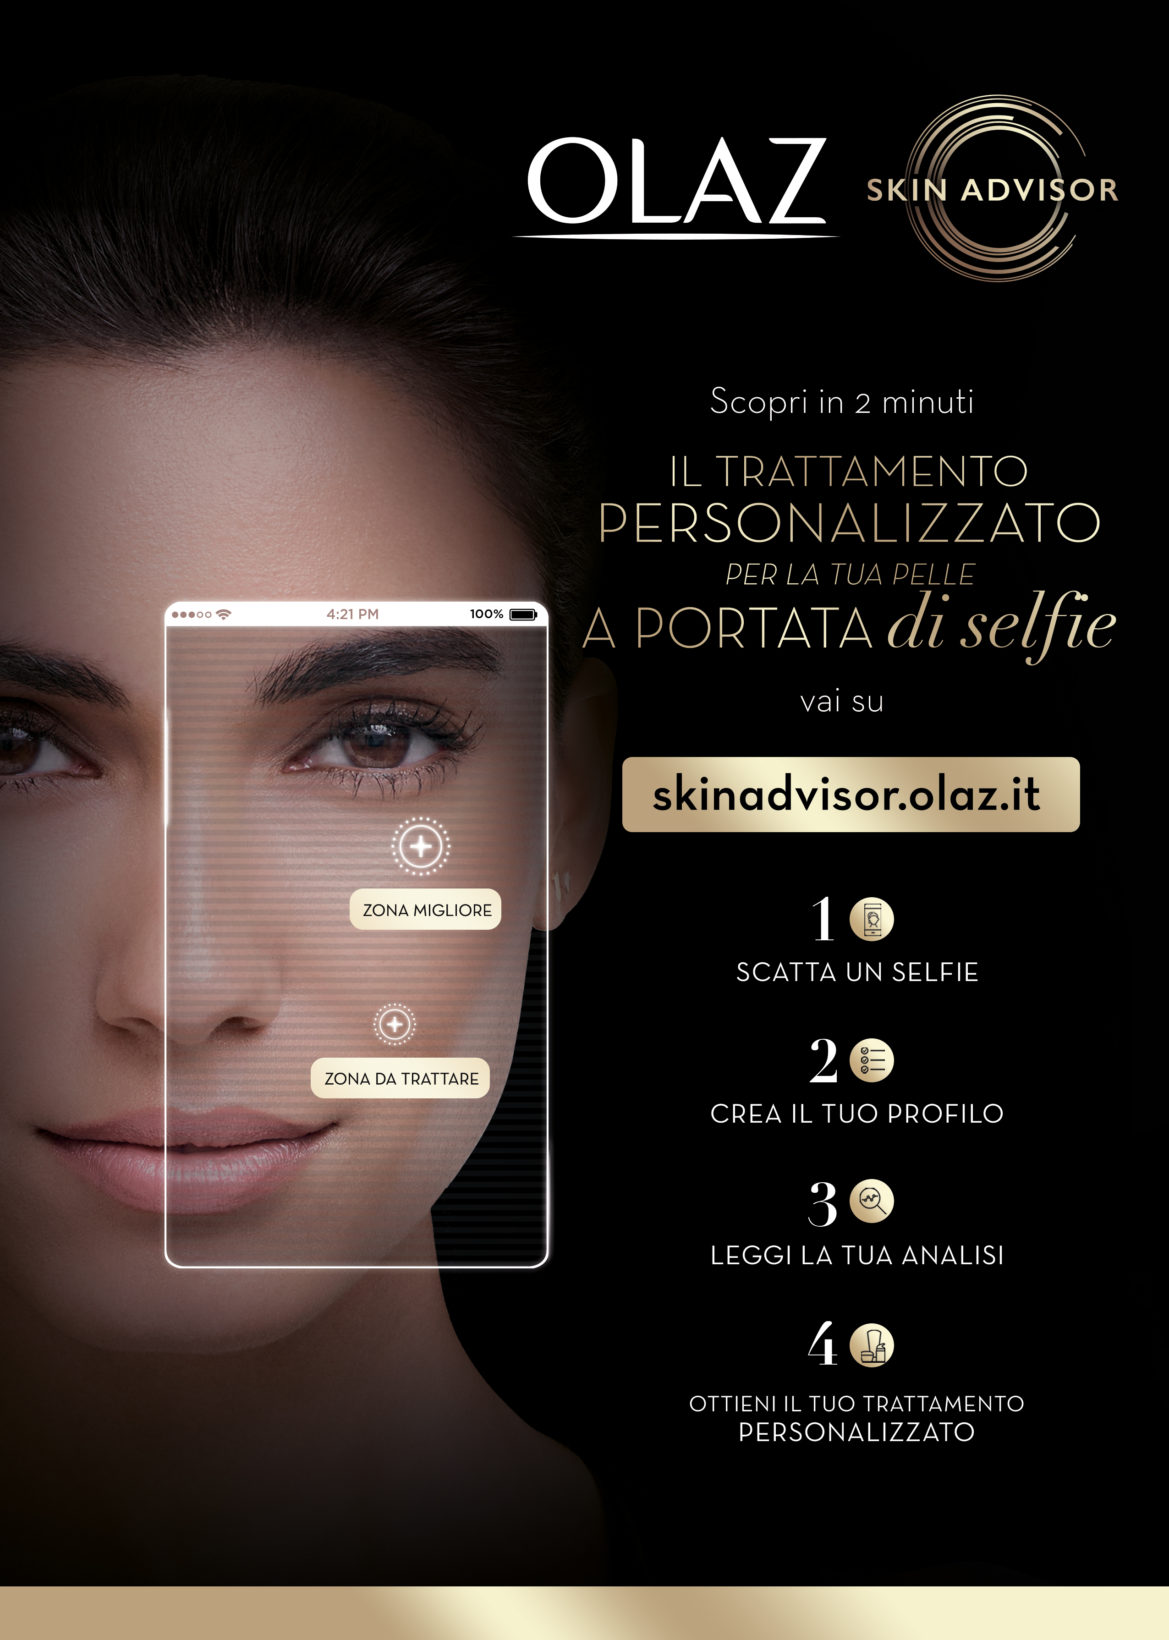 Con Skin Advisor di Olaz la cura della pelle è a portata di selfie